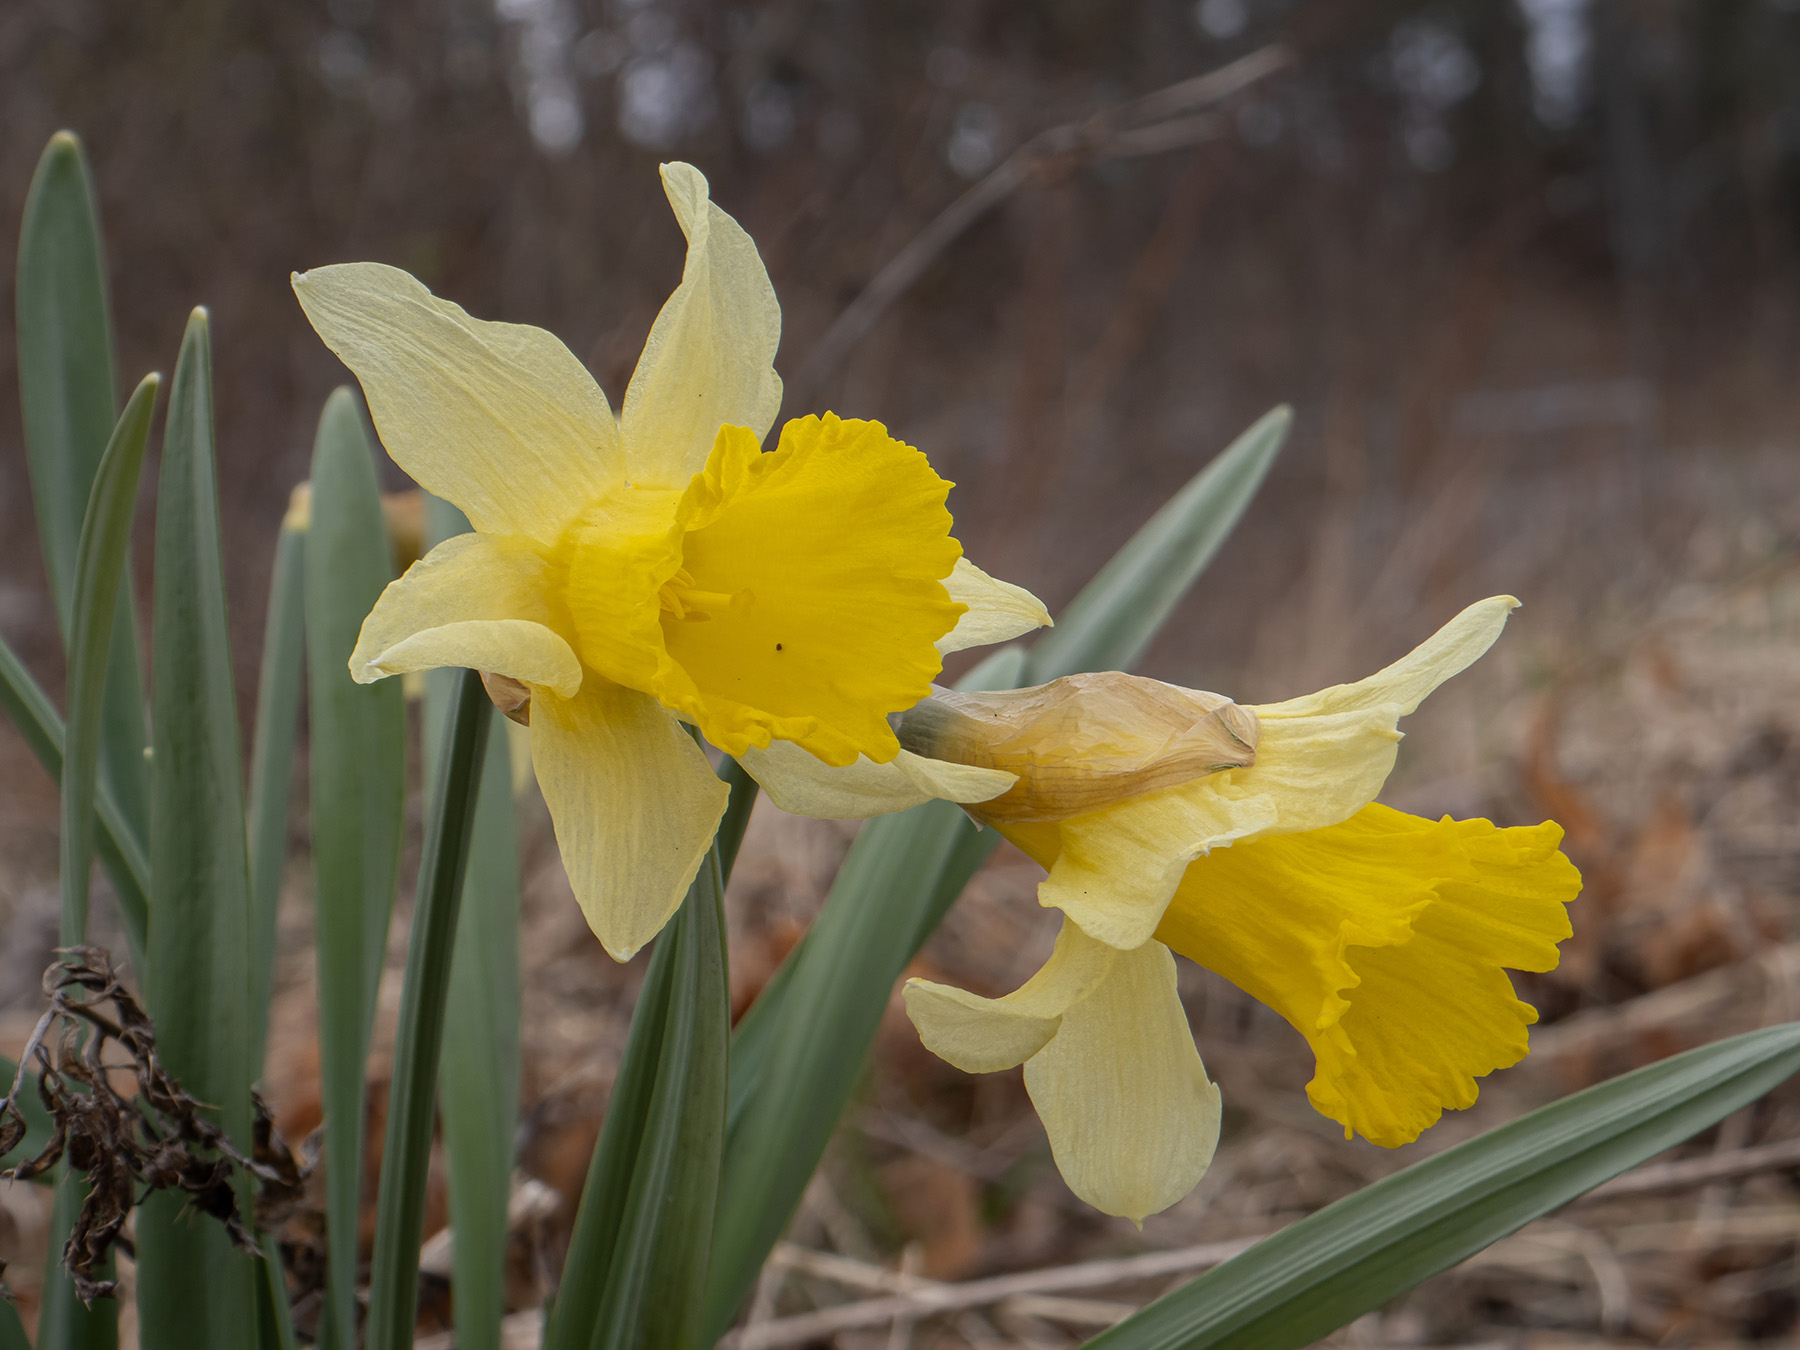 Нарцисс ложный (Narcissus pseudonarcissus)Нарцисс ложный (Narcissus pseudonarcissus) в природном парке G?rv?ln, Стокгольм, апрель 2020 года. Автор фото: Сутормина Марина